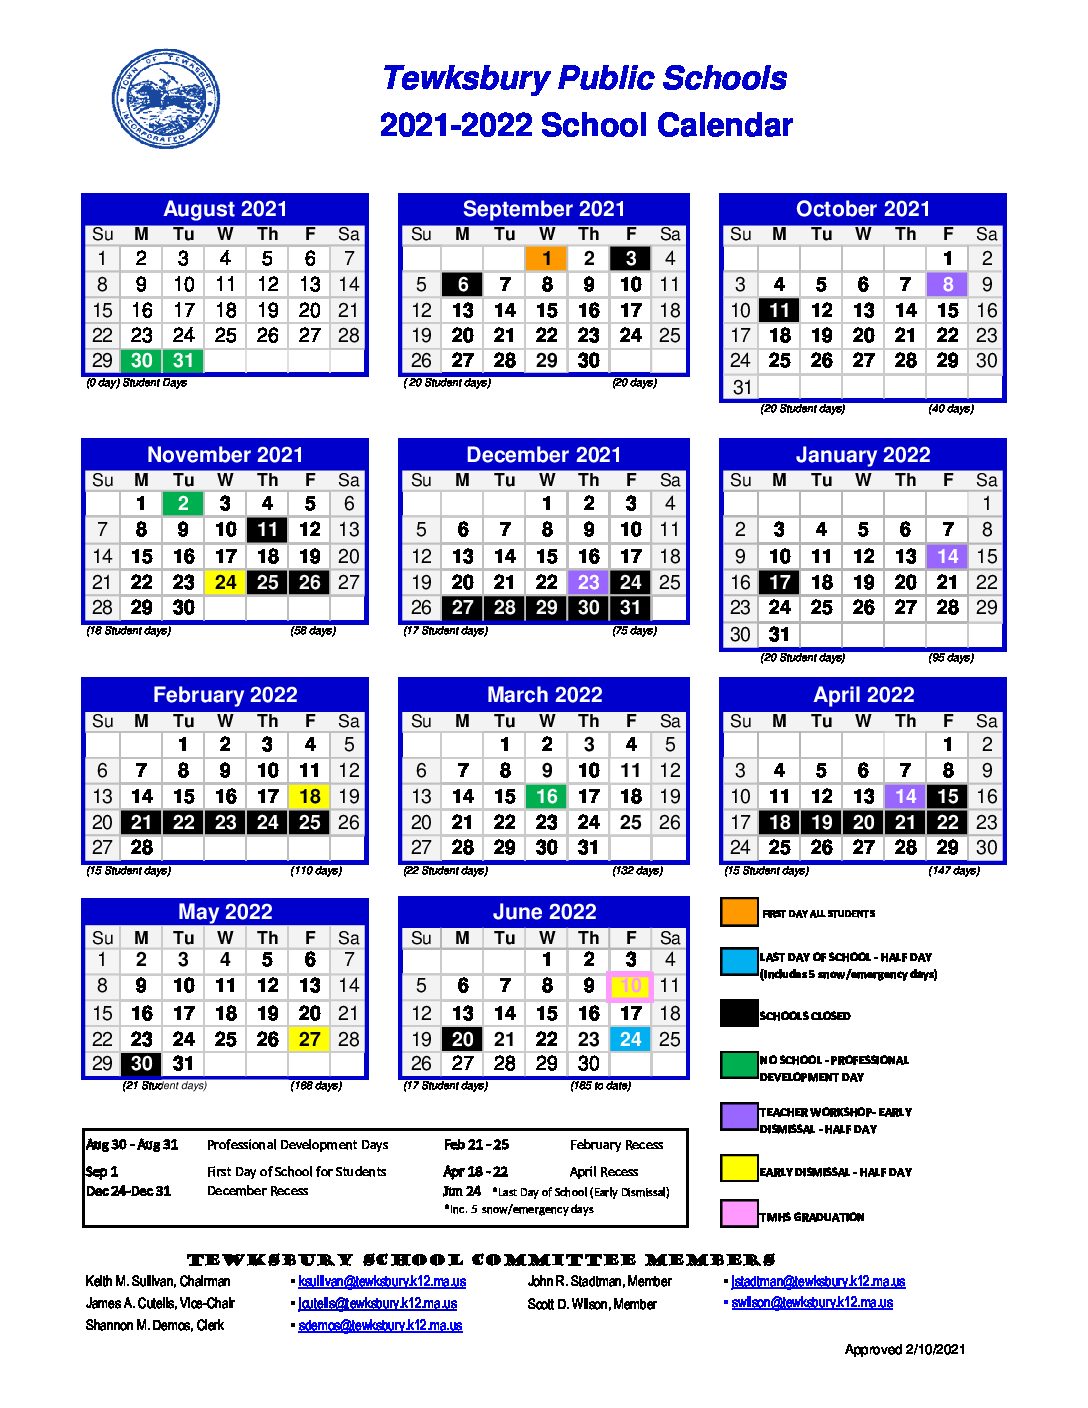 Emerson College Fall 2022 Calendar 2021-2022 School Calendar - Tewksbury Public Schools